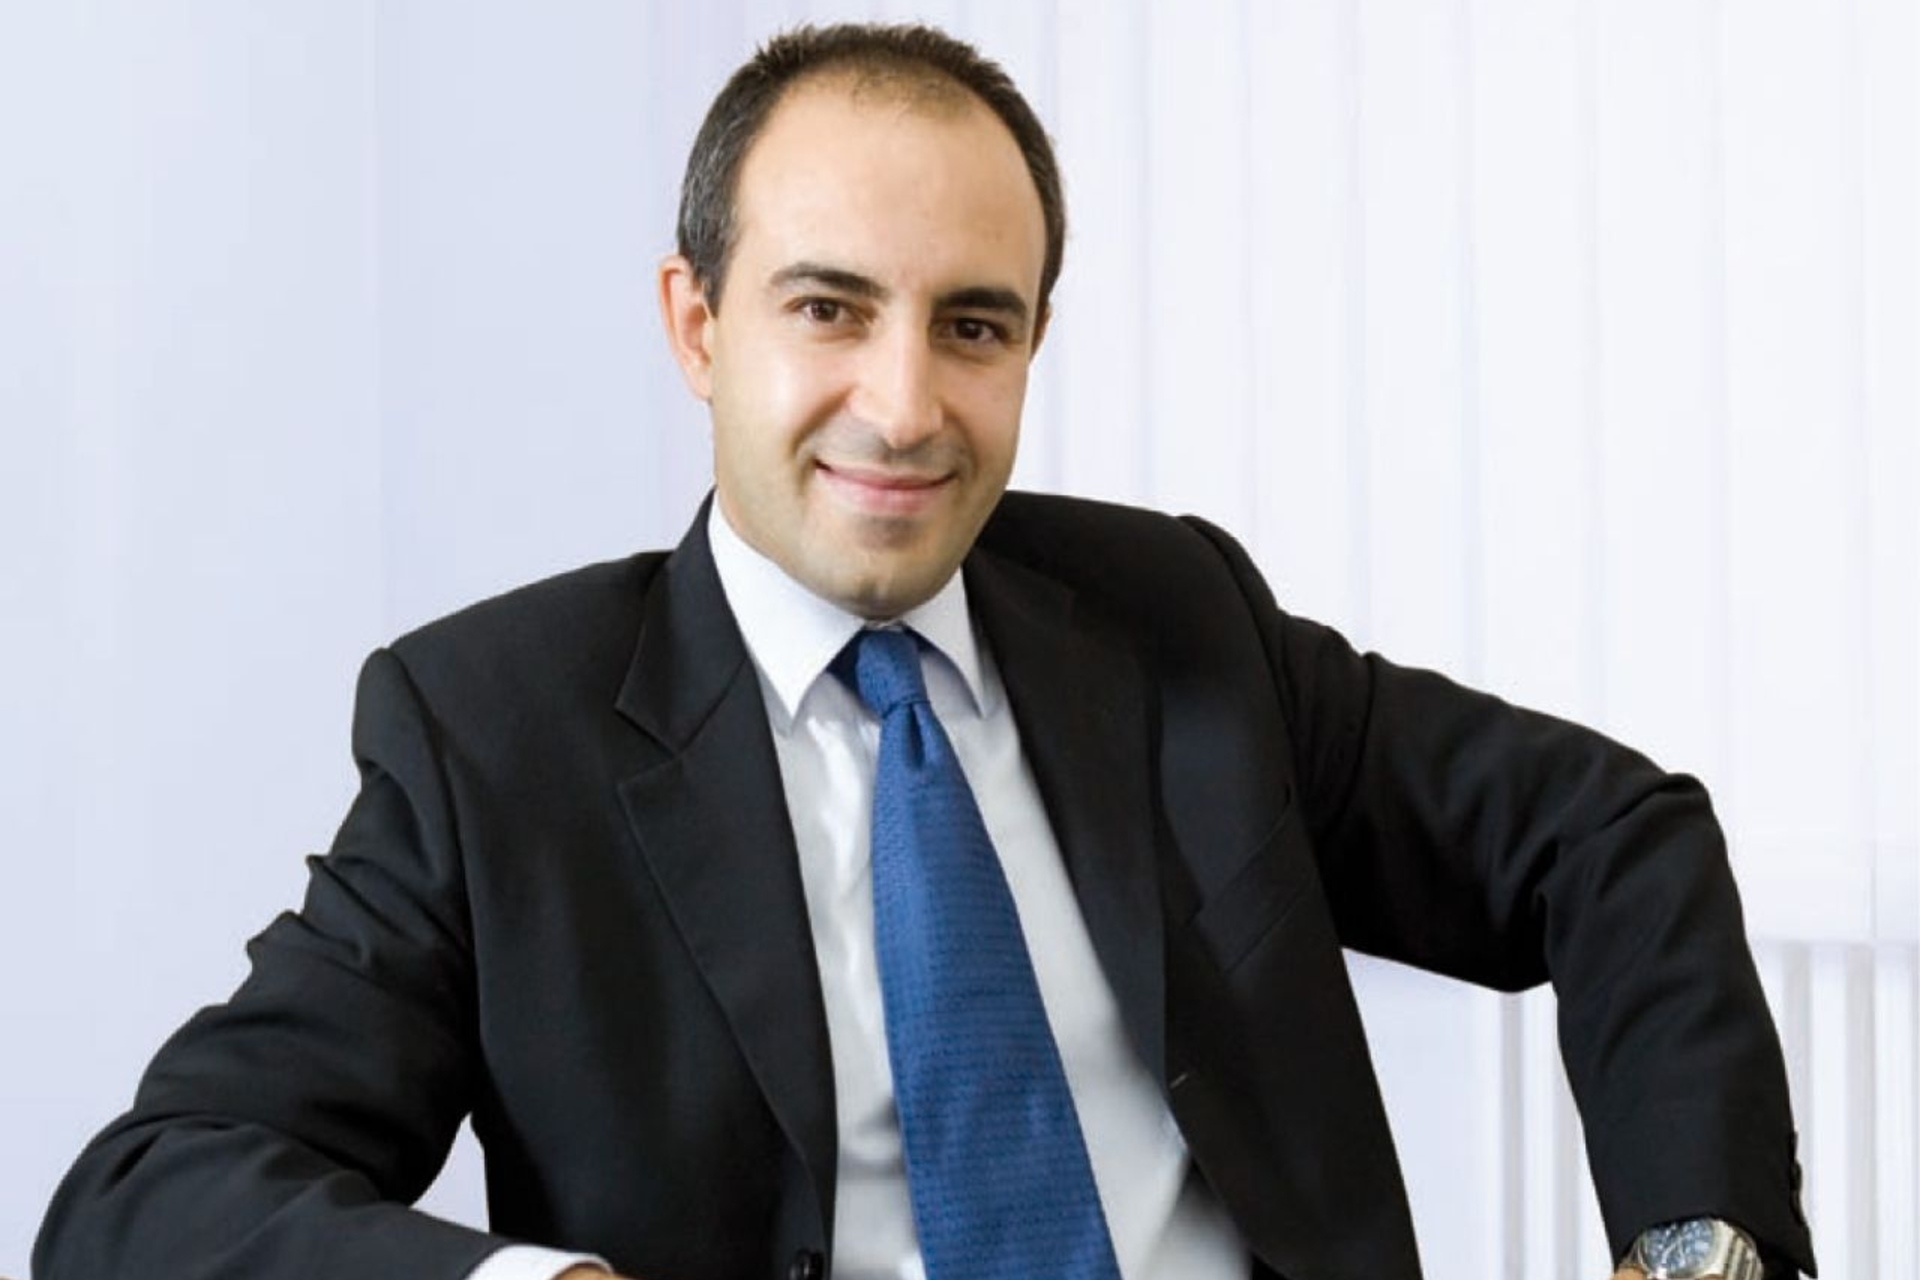 Fabio Pagano er administrerende direktør for SitoVivo